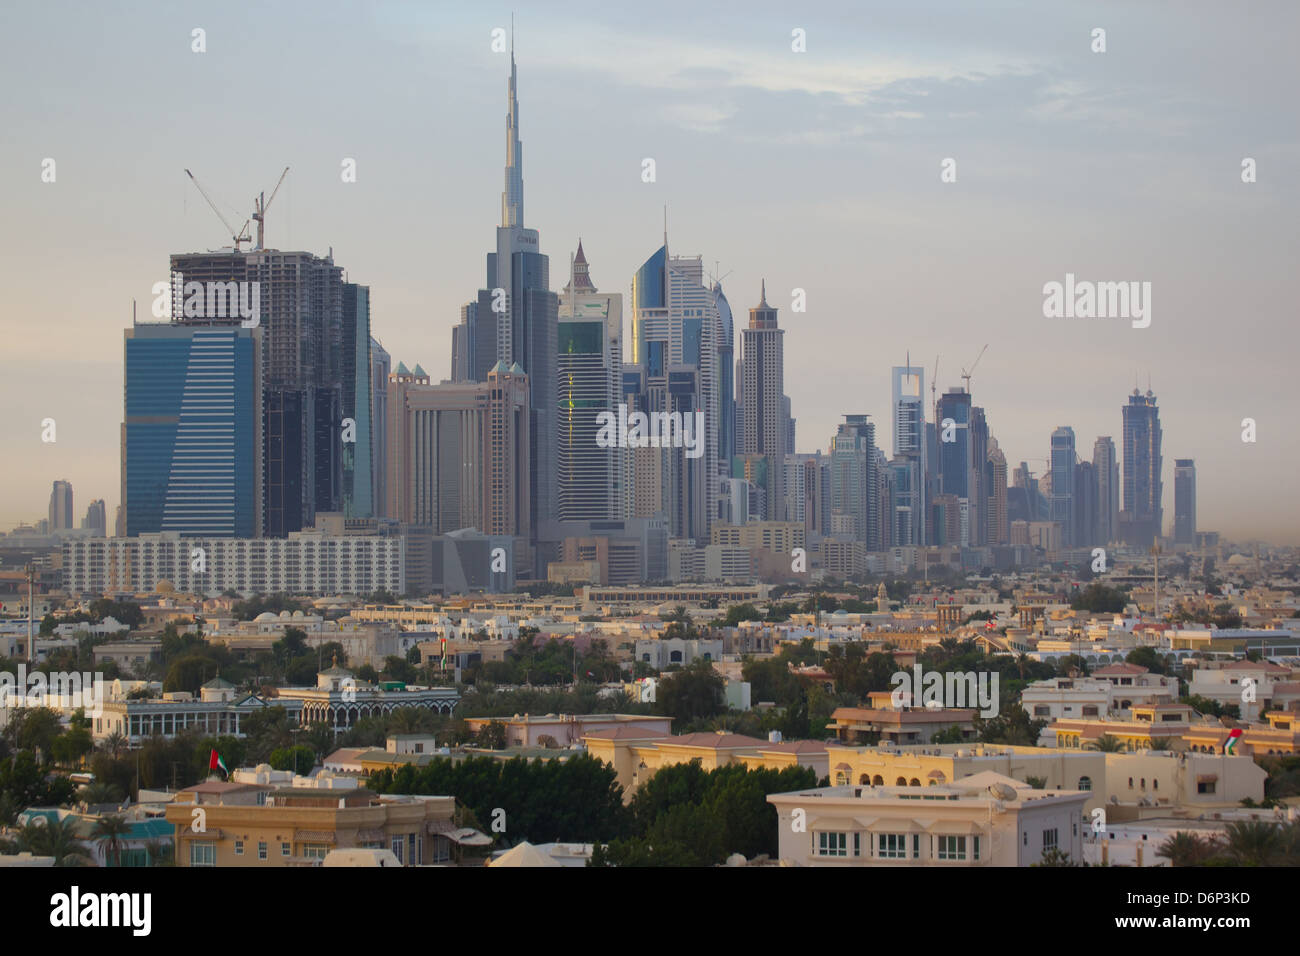 City skyline, Dubai, United Arab Emirates, Middle East Stock Photo